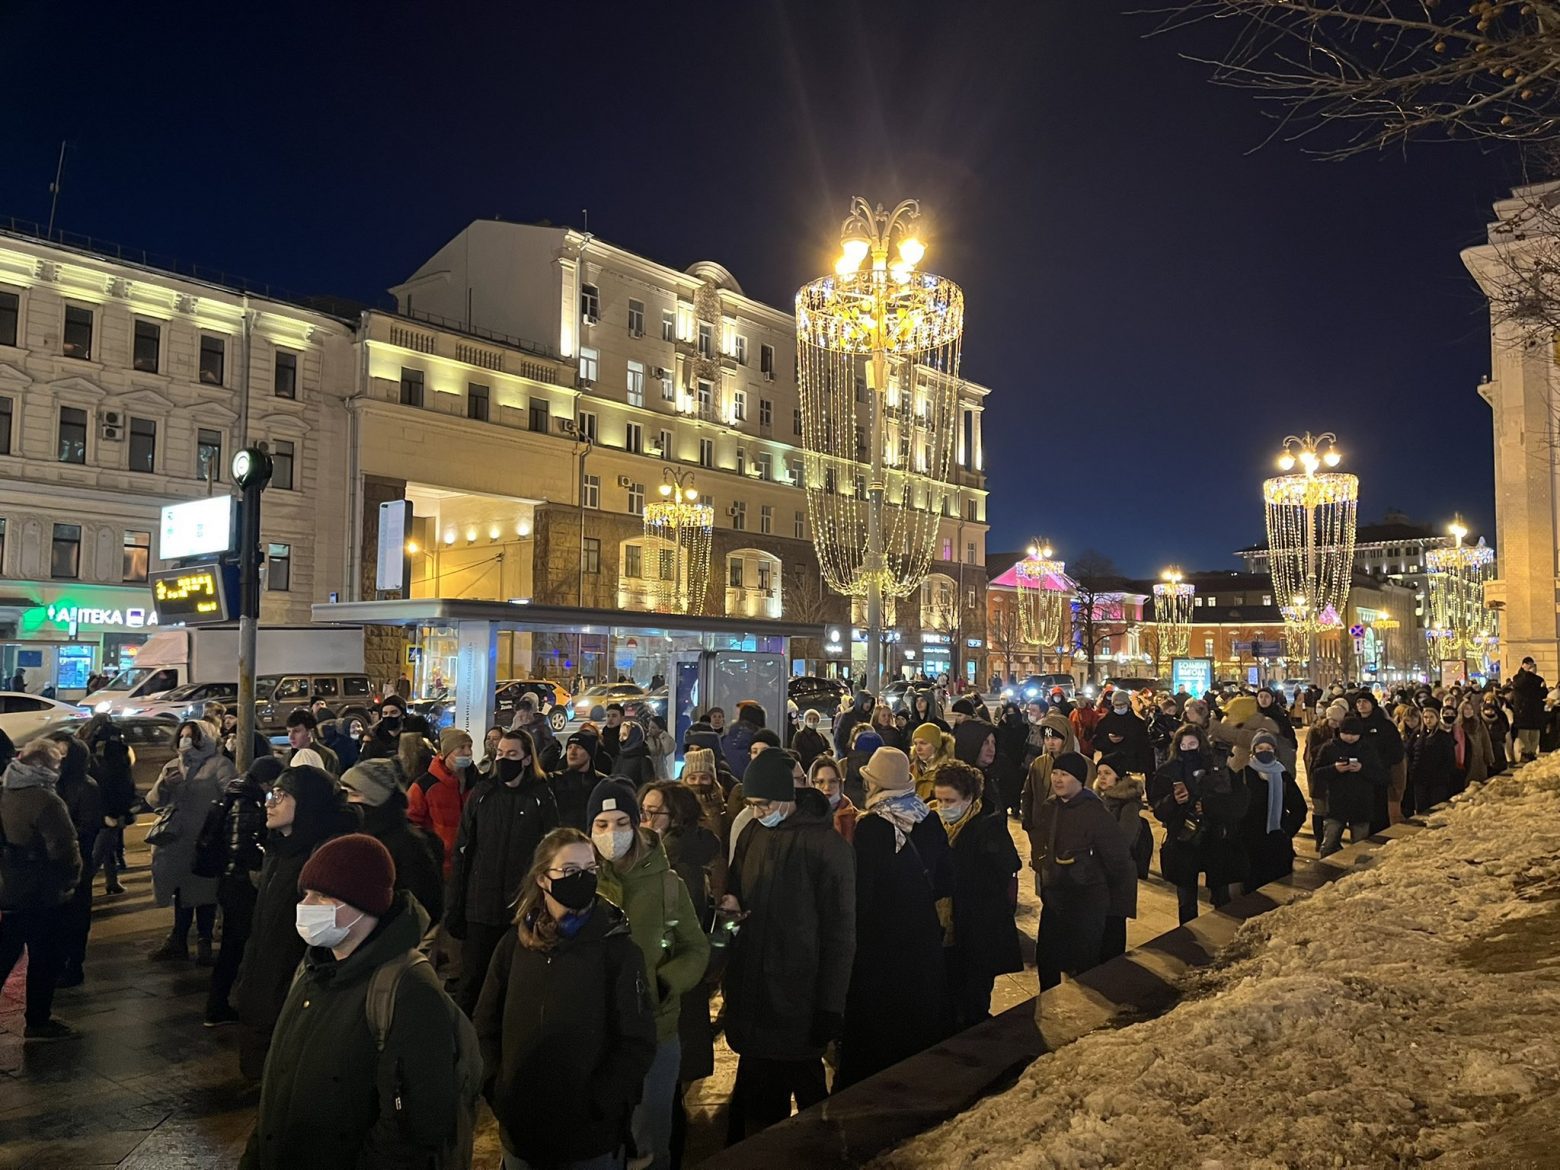 Πόλεμος στην Ουκρανία: Οι Ρώσοι διαδηλώνουν κατά του Πούτιν - Συλλήψεις και ξύλο από την αστυνομία